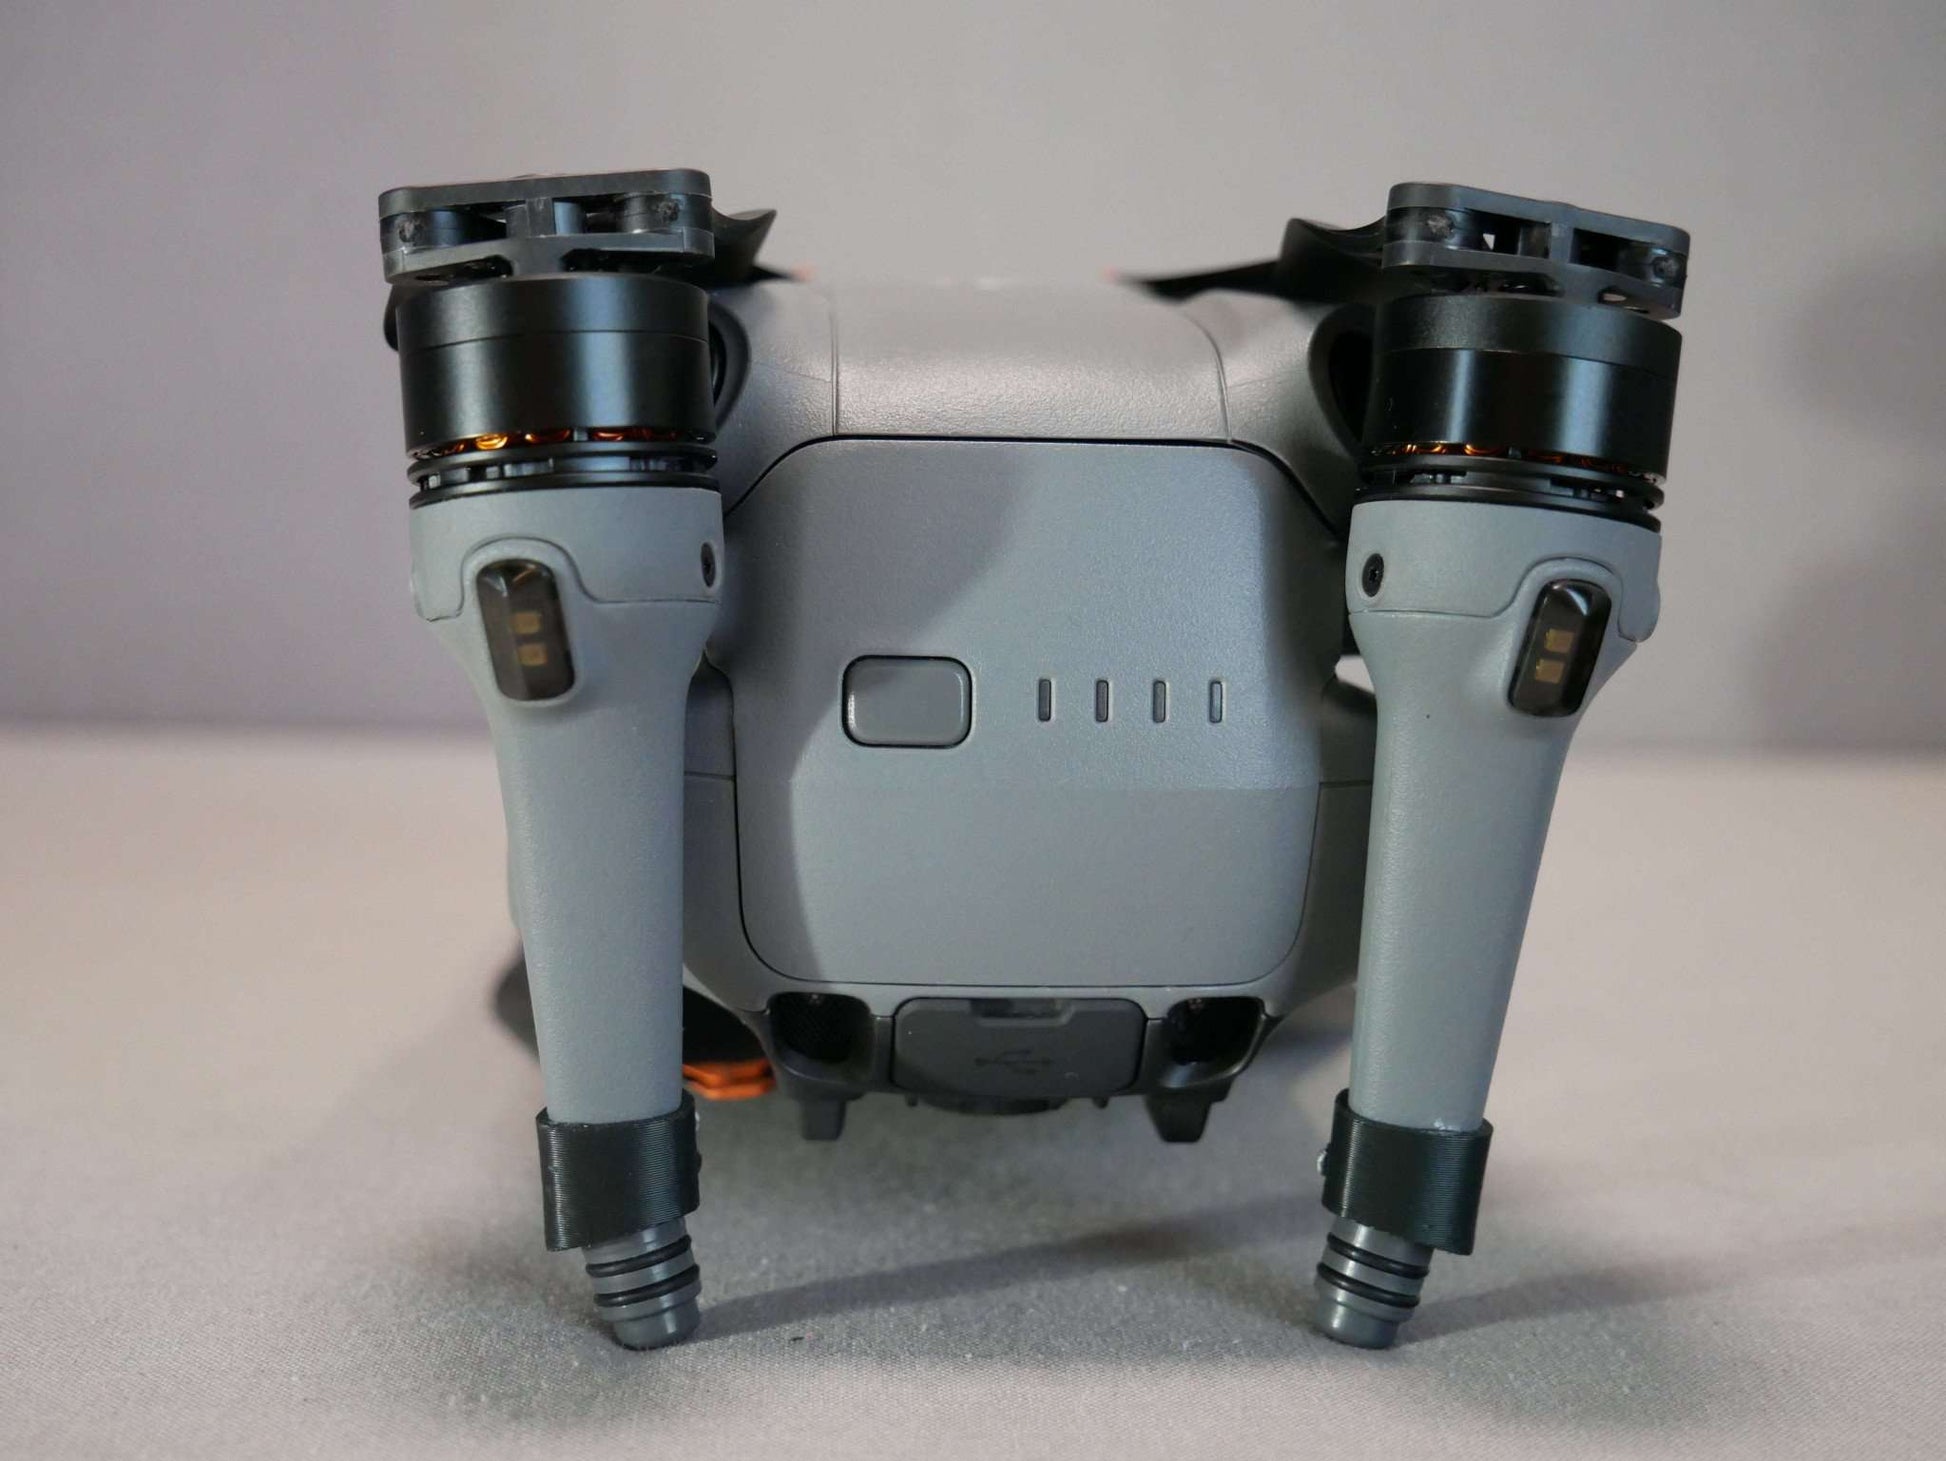 Adapter des Langestell Systems hinten bei zusammengeklappter Drohne. Rückansicht